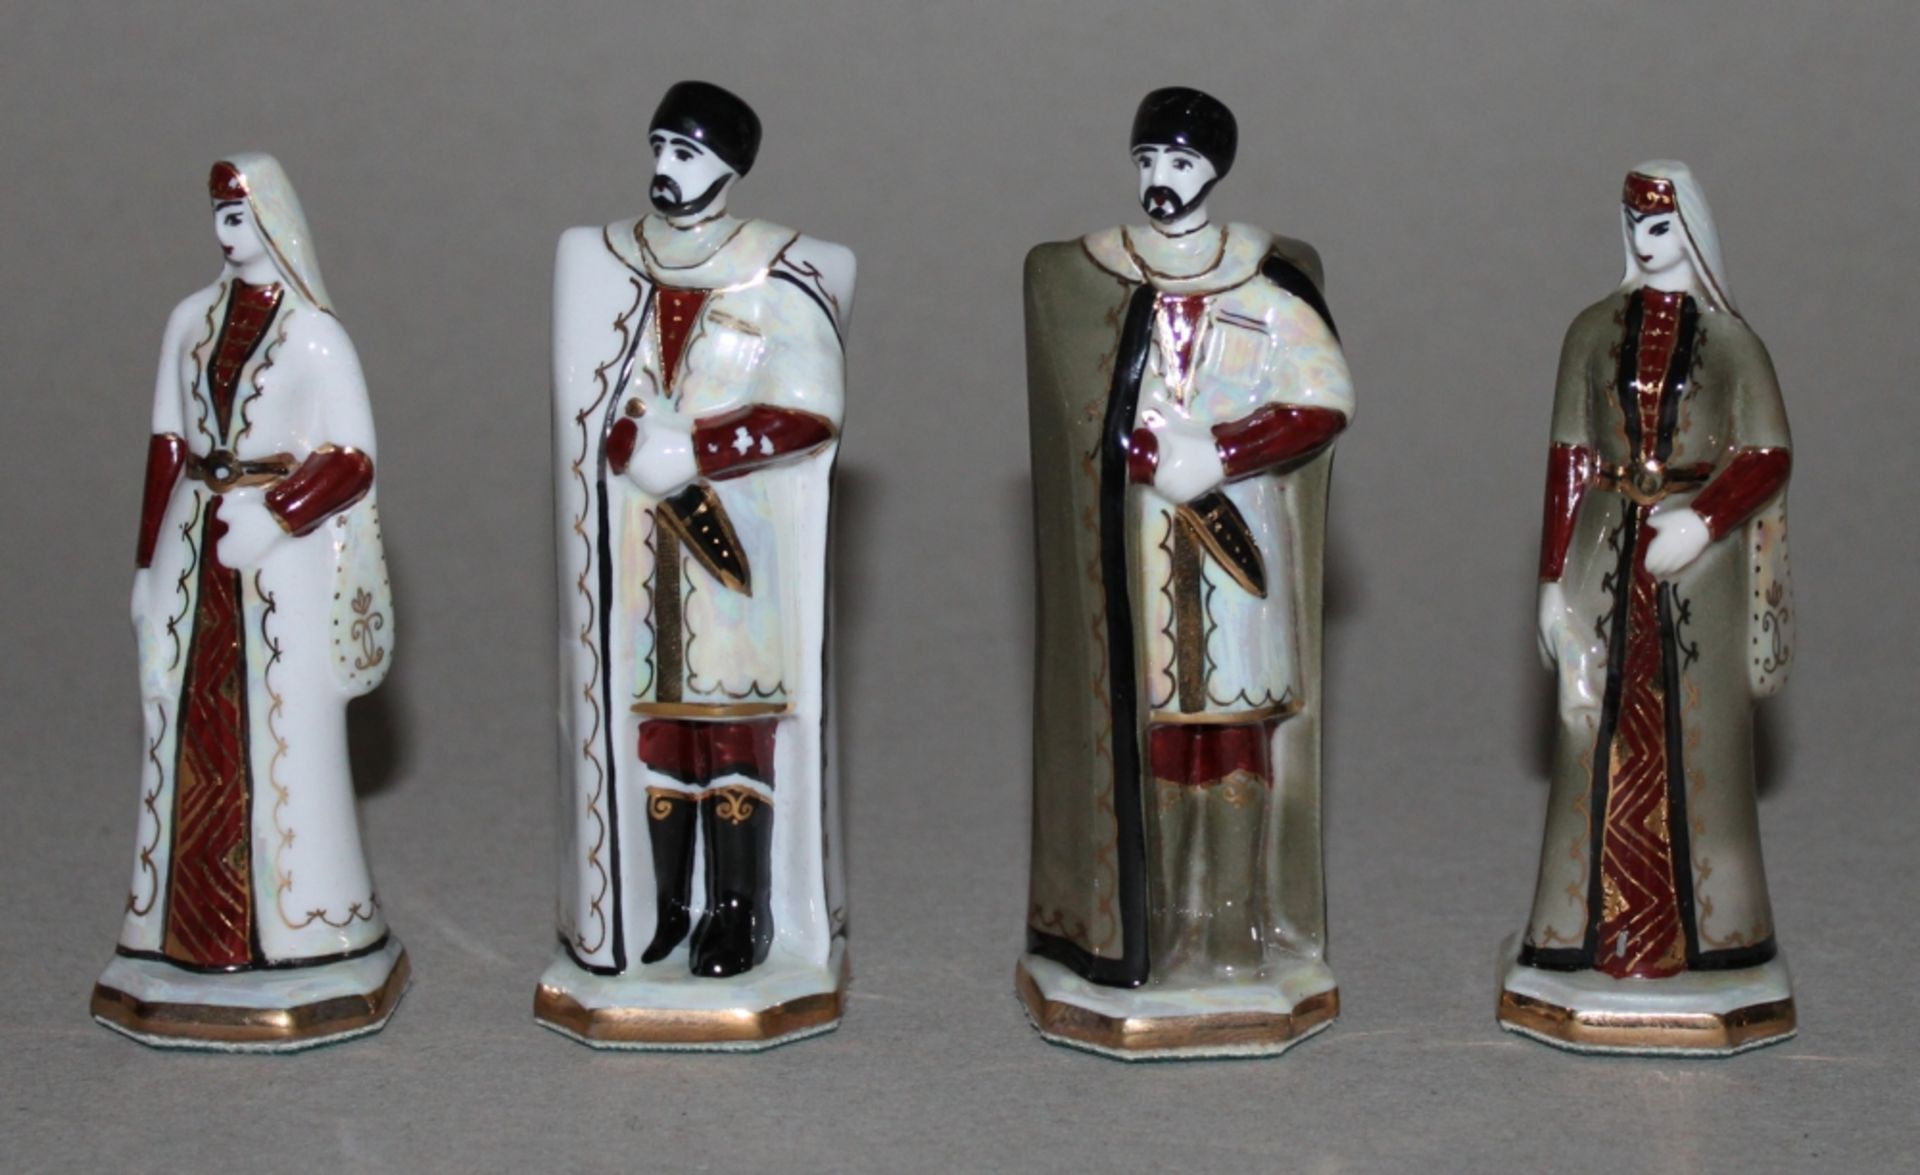 UDSSR. Russland. Schachspiel "Kislowodsk" aus Porzellan mit ornamentalen Verzierungen. Dazu ein